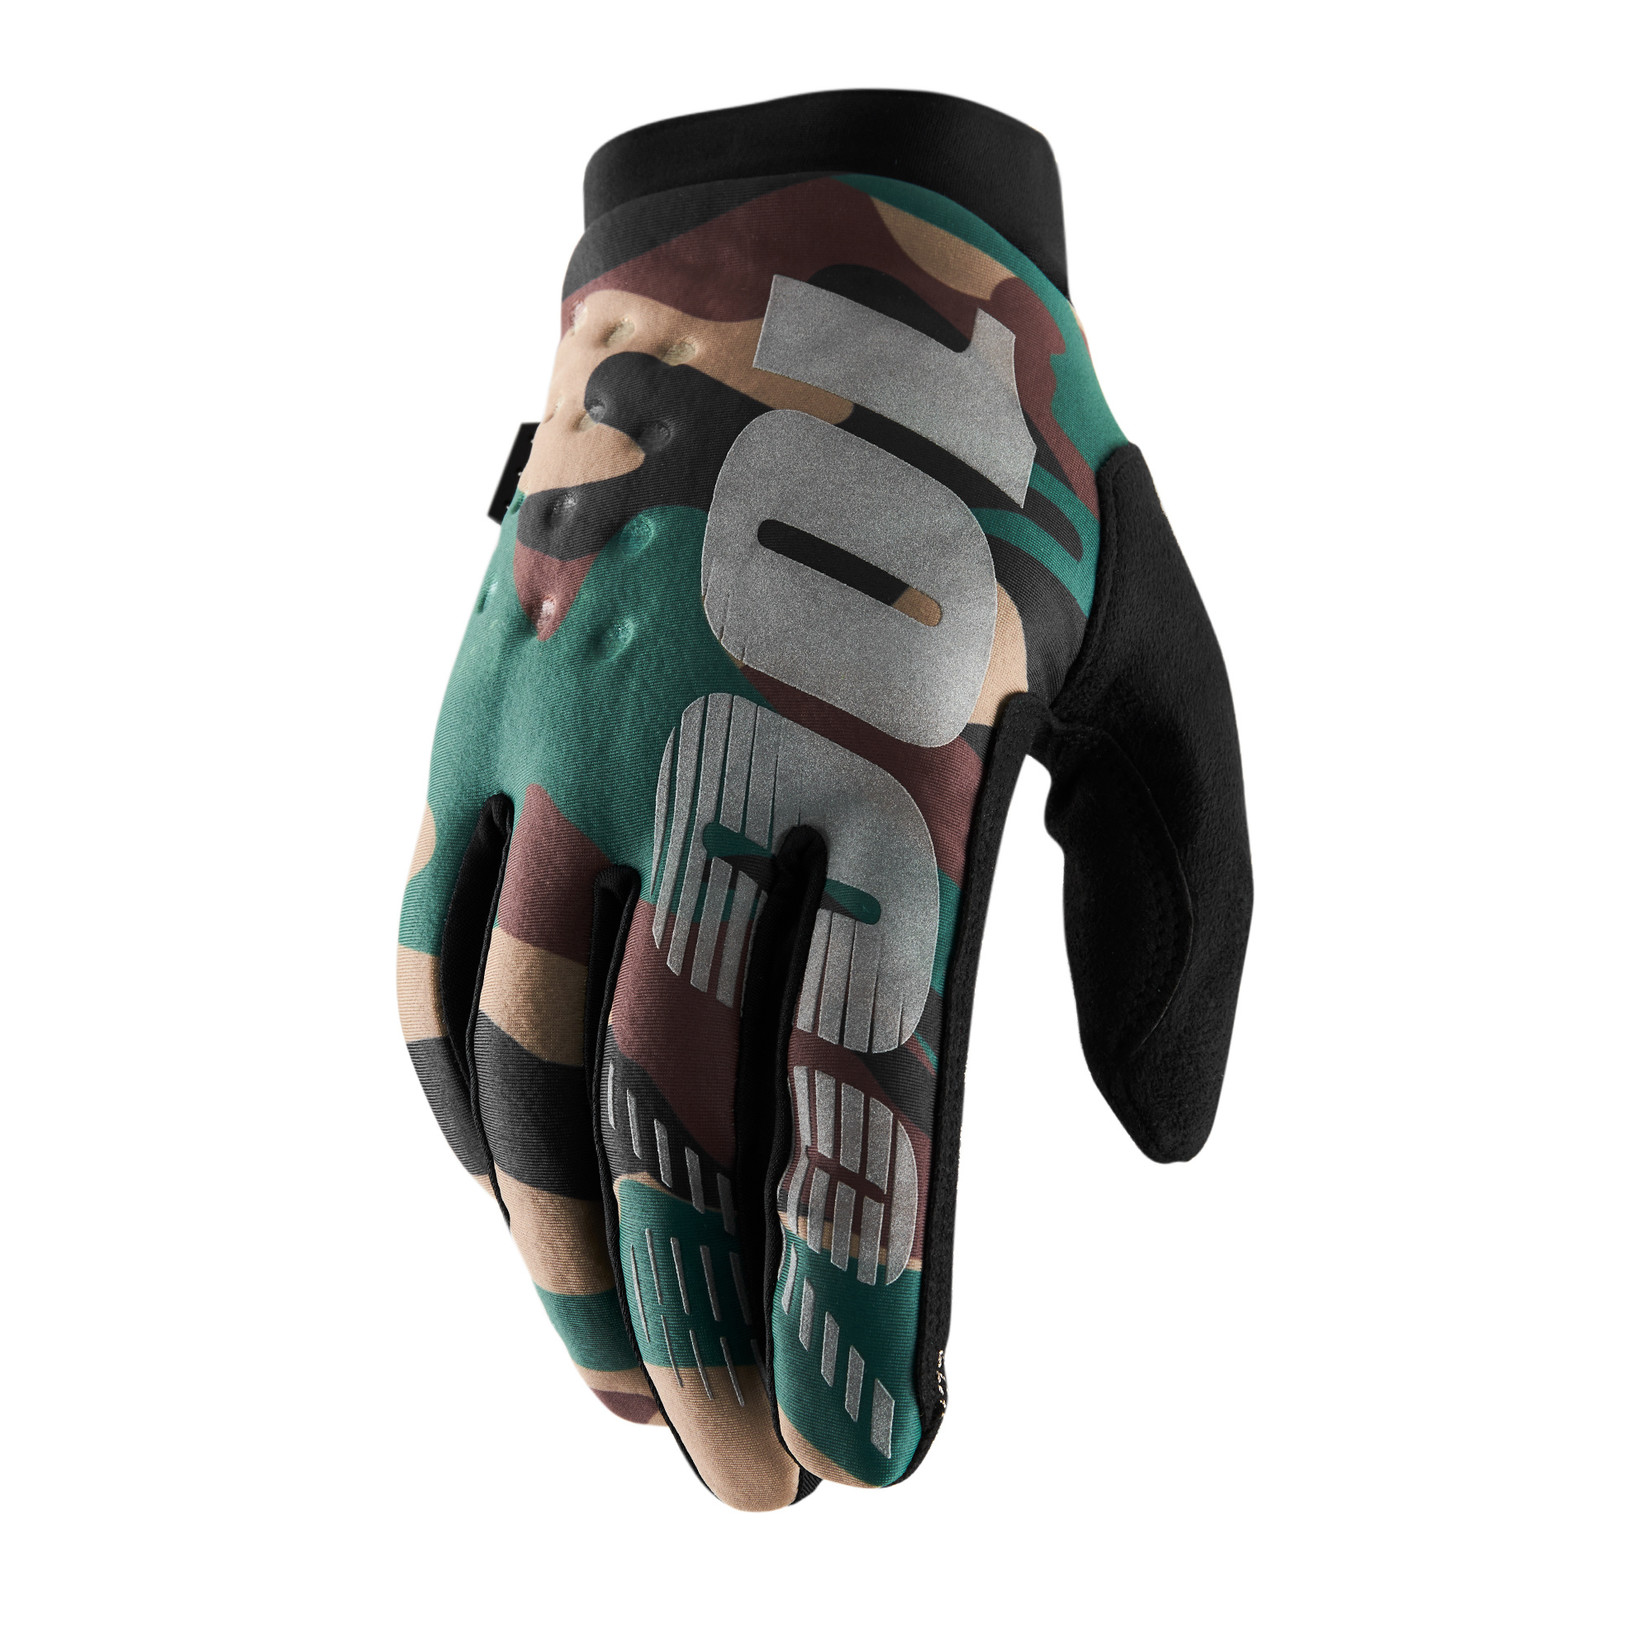 FE sports 100% BRISKER Adjustable TPR Youth Gloves - Camo/Black